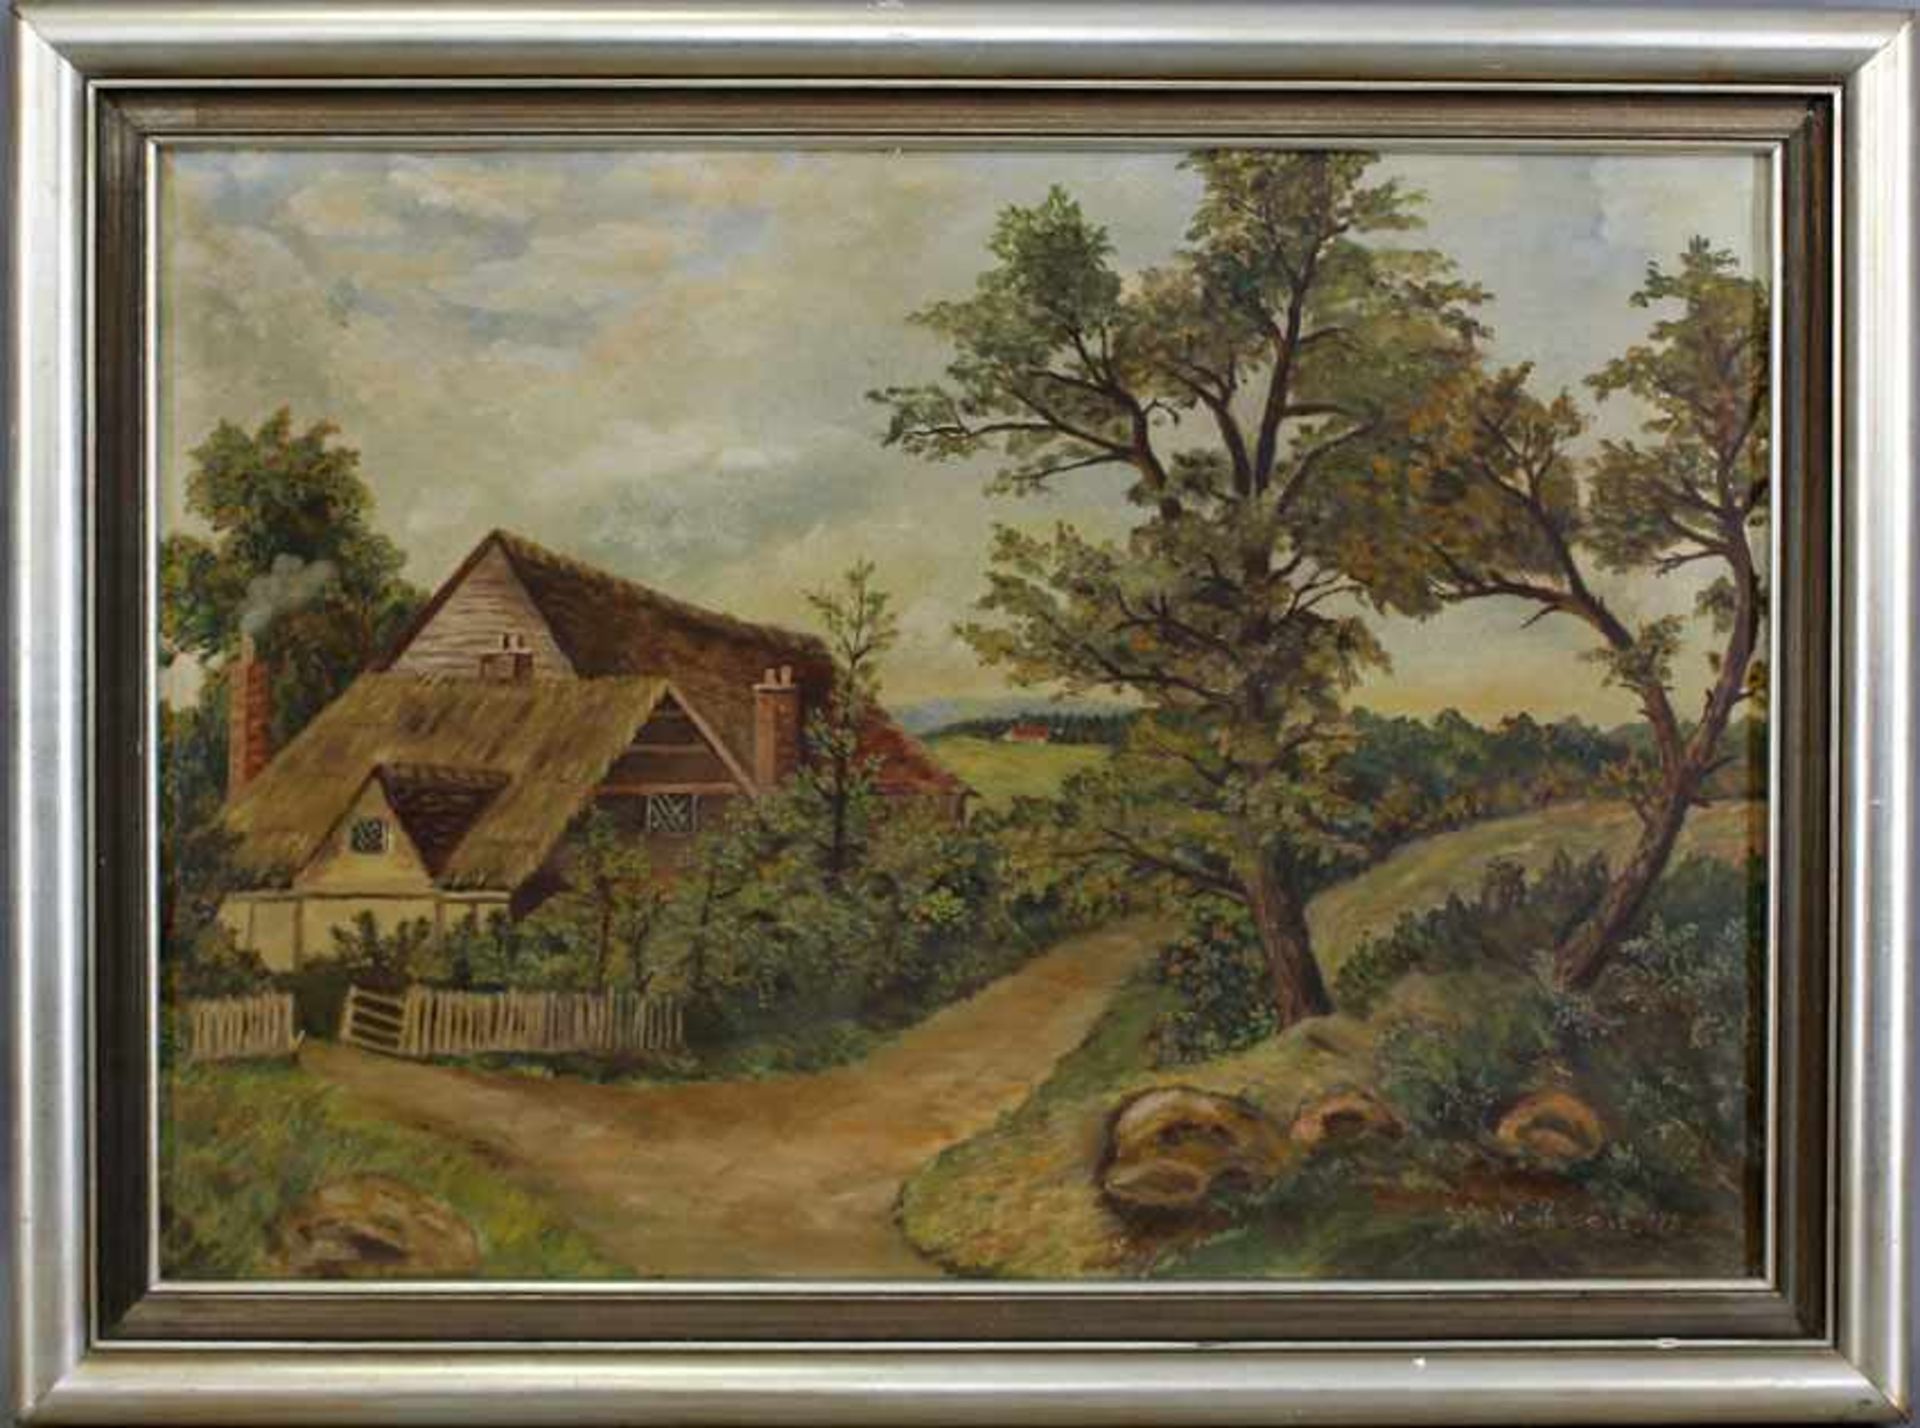 Rorsche, Bauernhaus. re. u. sign. "W. Rorsche" und dat. "1950", Öl/Lwd, in sanfter Hügellandschaft